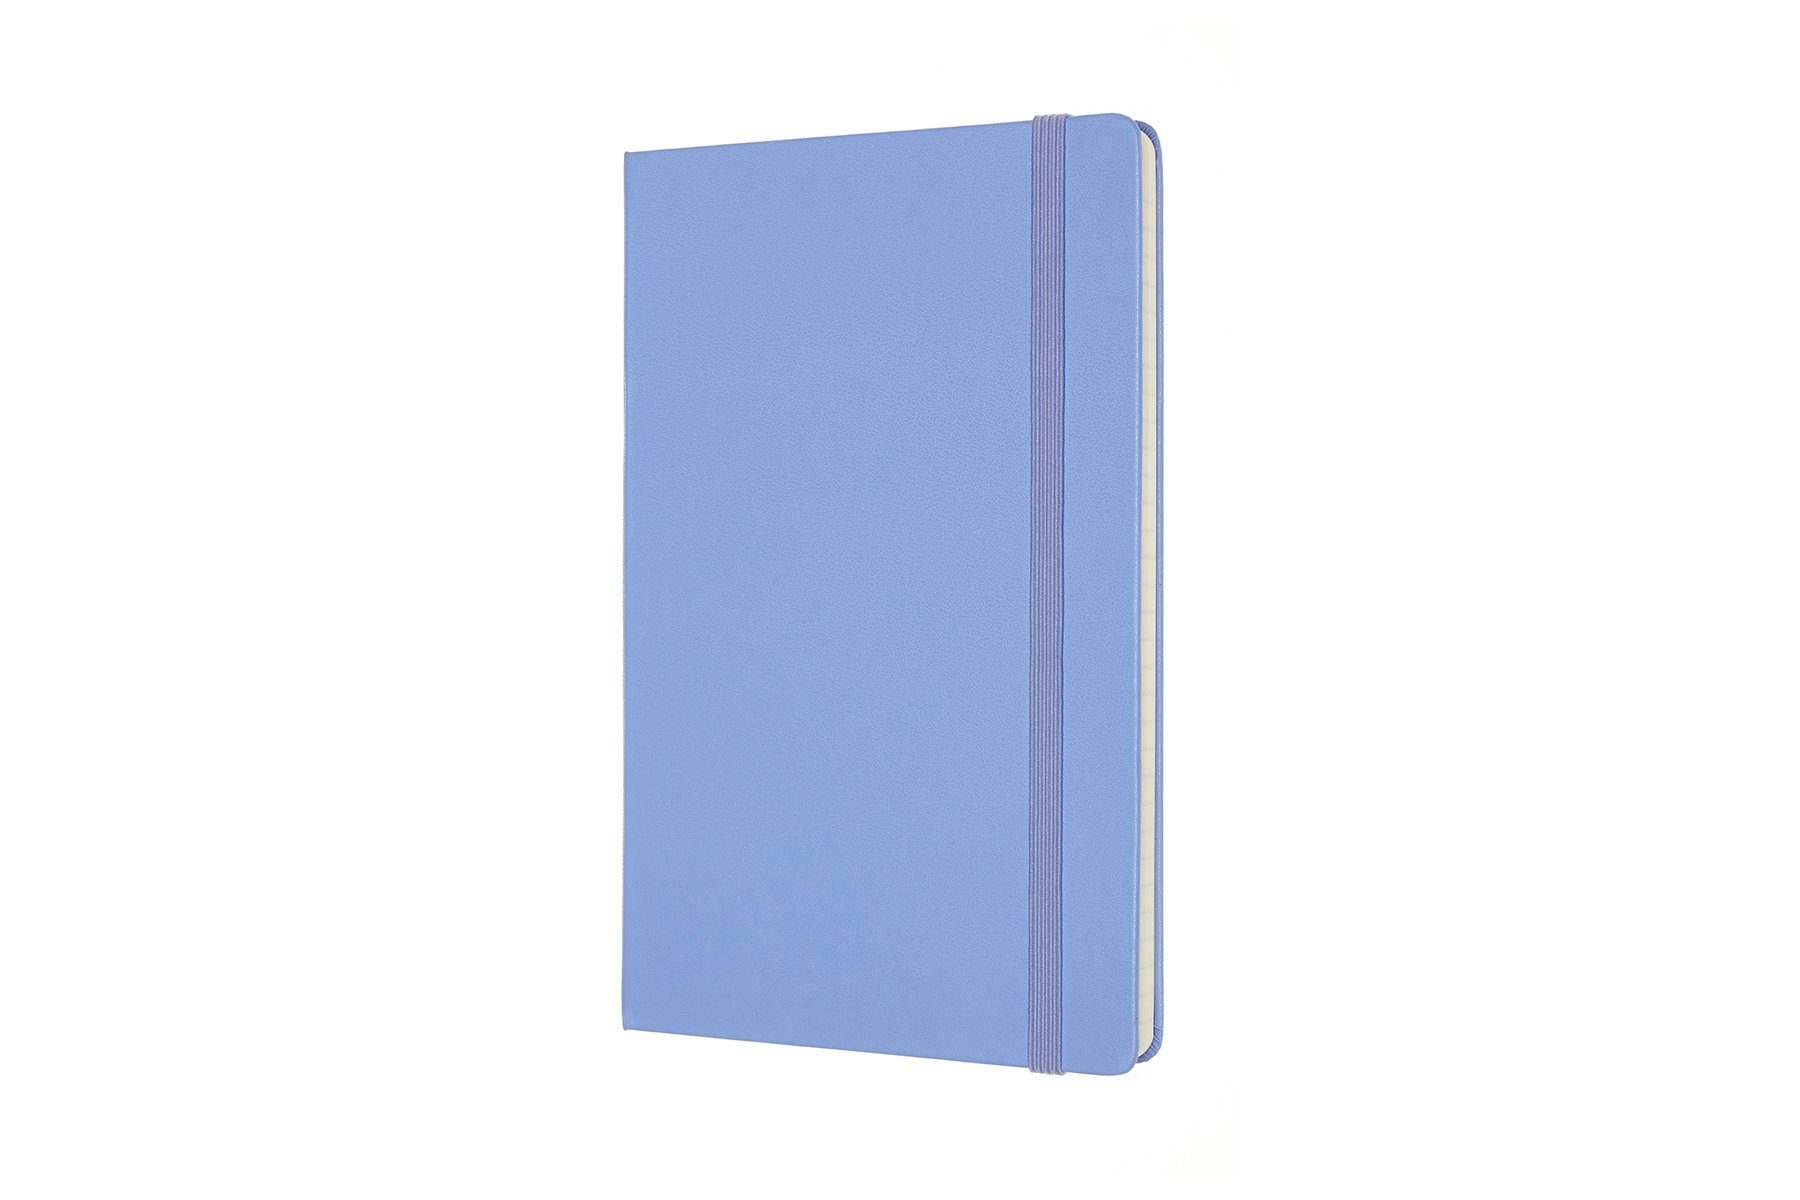 70g-Papier (13x21) Notizbuch, mit Groß Blau Collection festem MOLESKINE Hortensien Classic Einband - L/A5 -